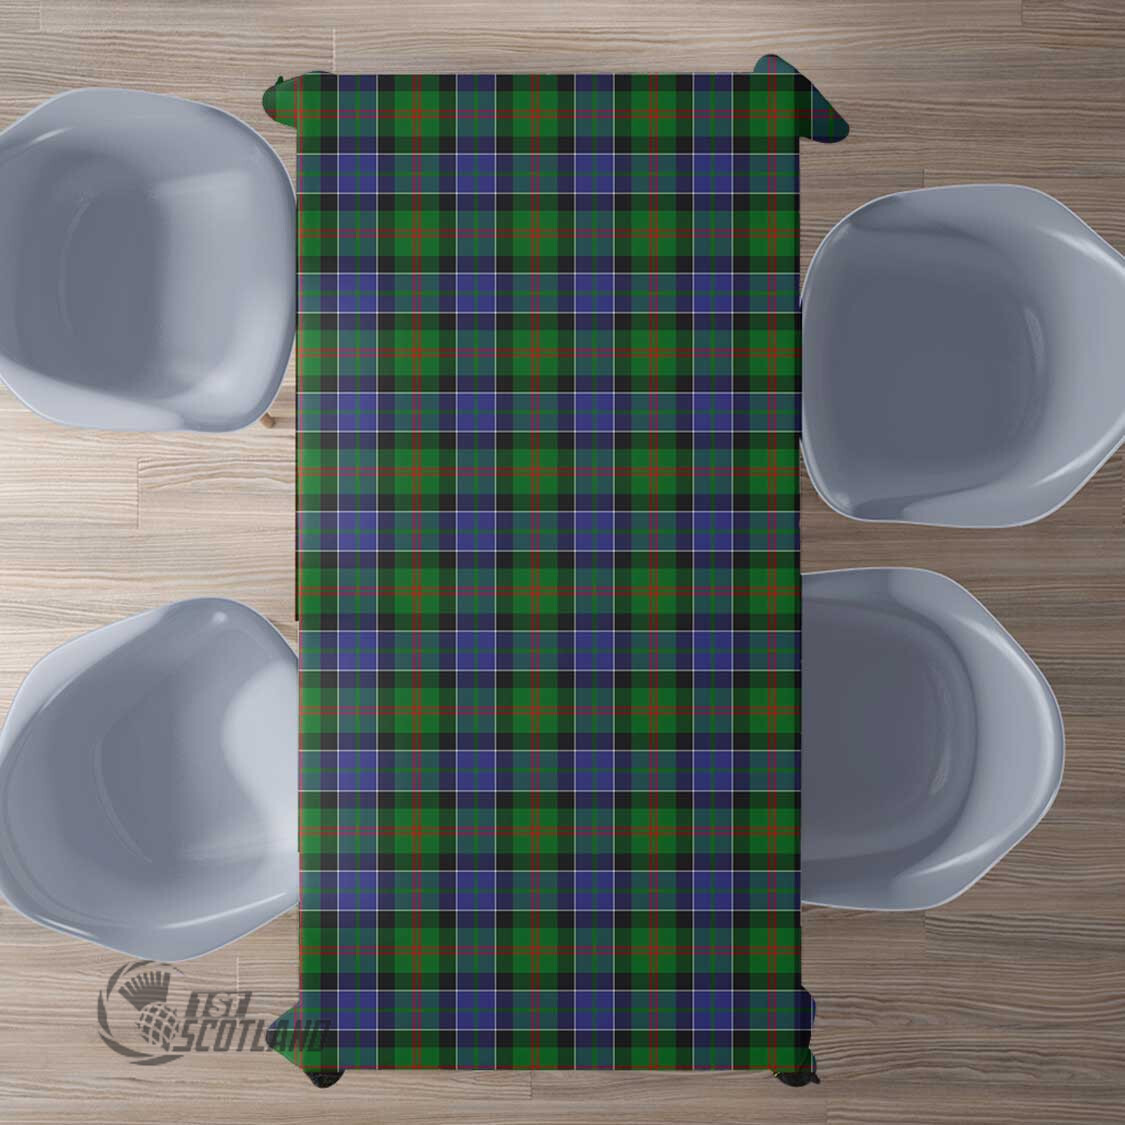 Scottish Paterson Tartan Rectangle Tablecloth Full Plaid